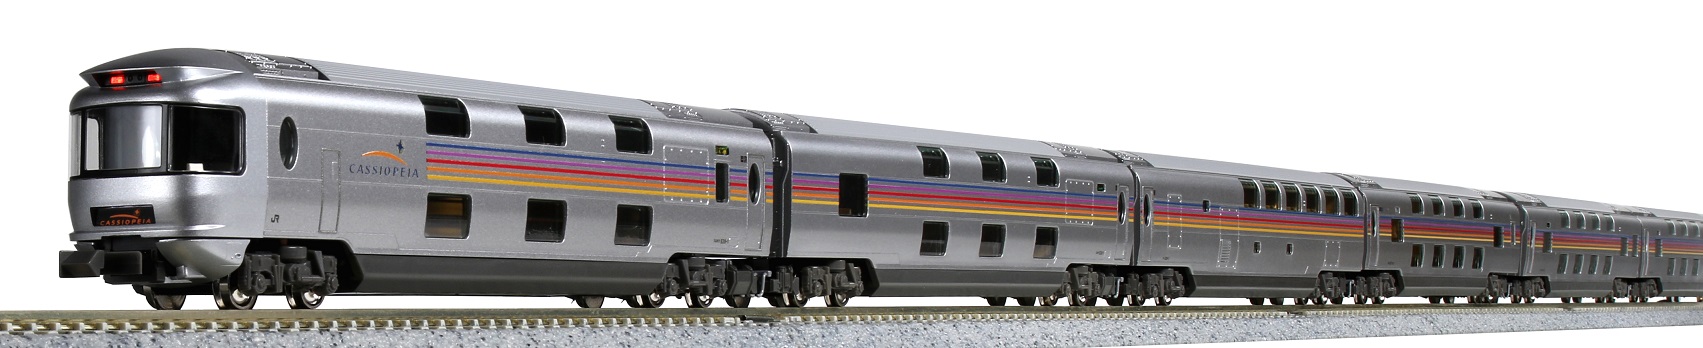 KATO鉄道模型オンラインショッピング E26系「カシオペア」 6両基本 